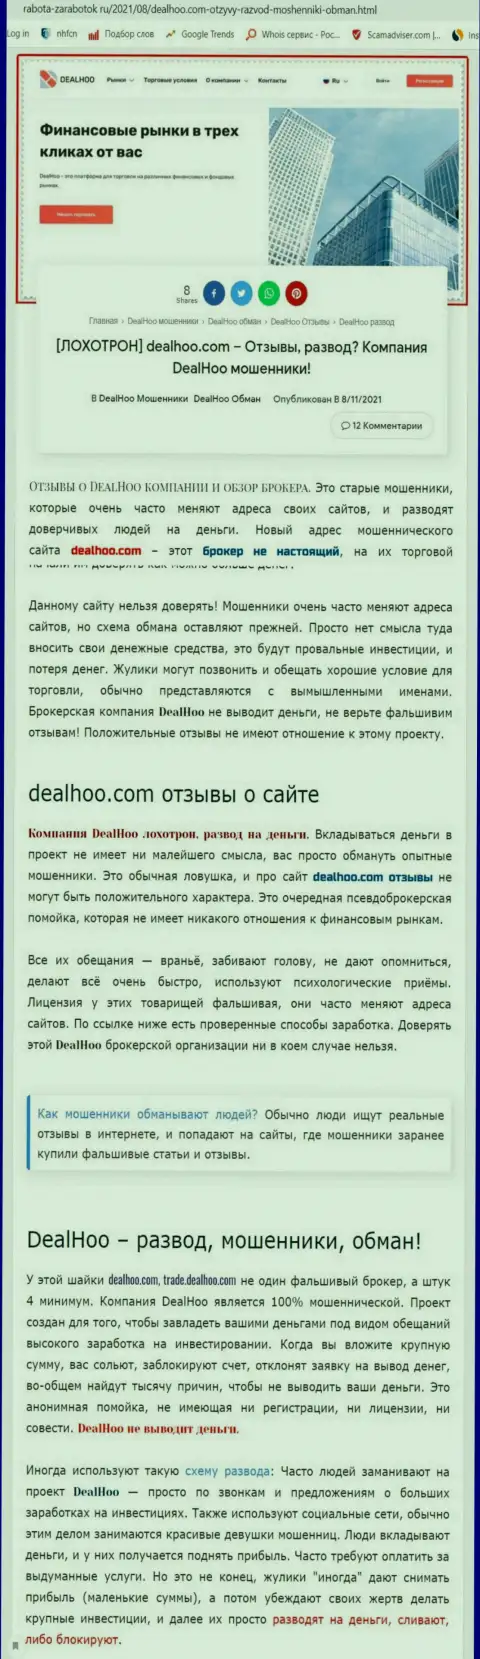 DealHoo Com - это РАЗВОДИЛЫ ! Обзор махинаций организации и отзывы пострадавших